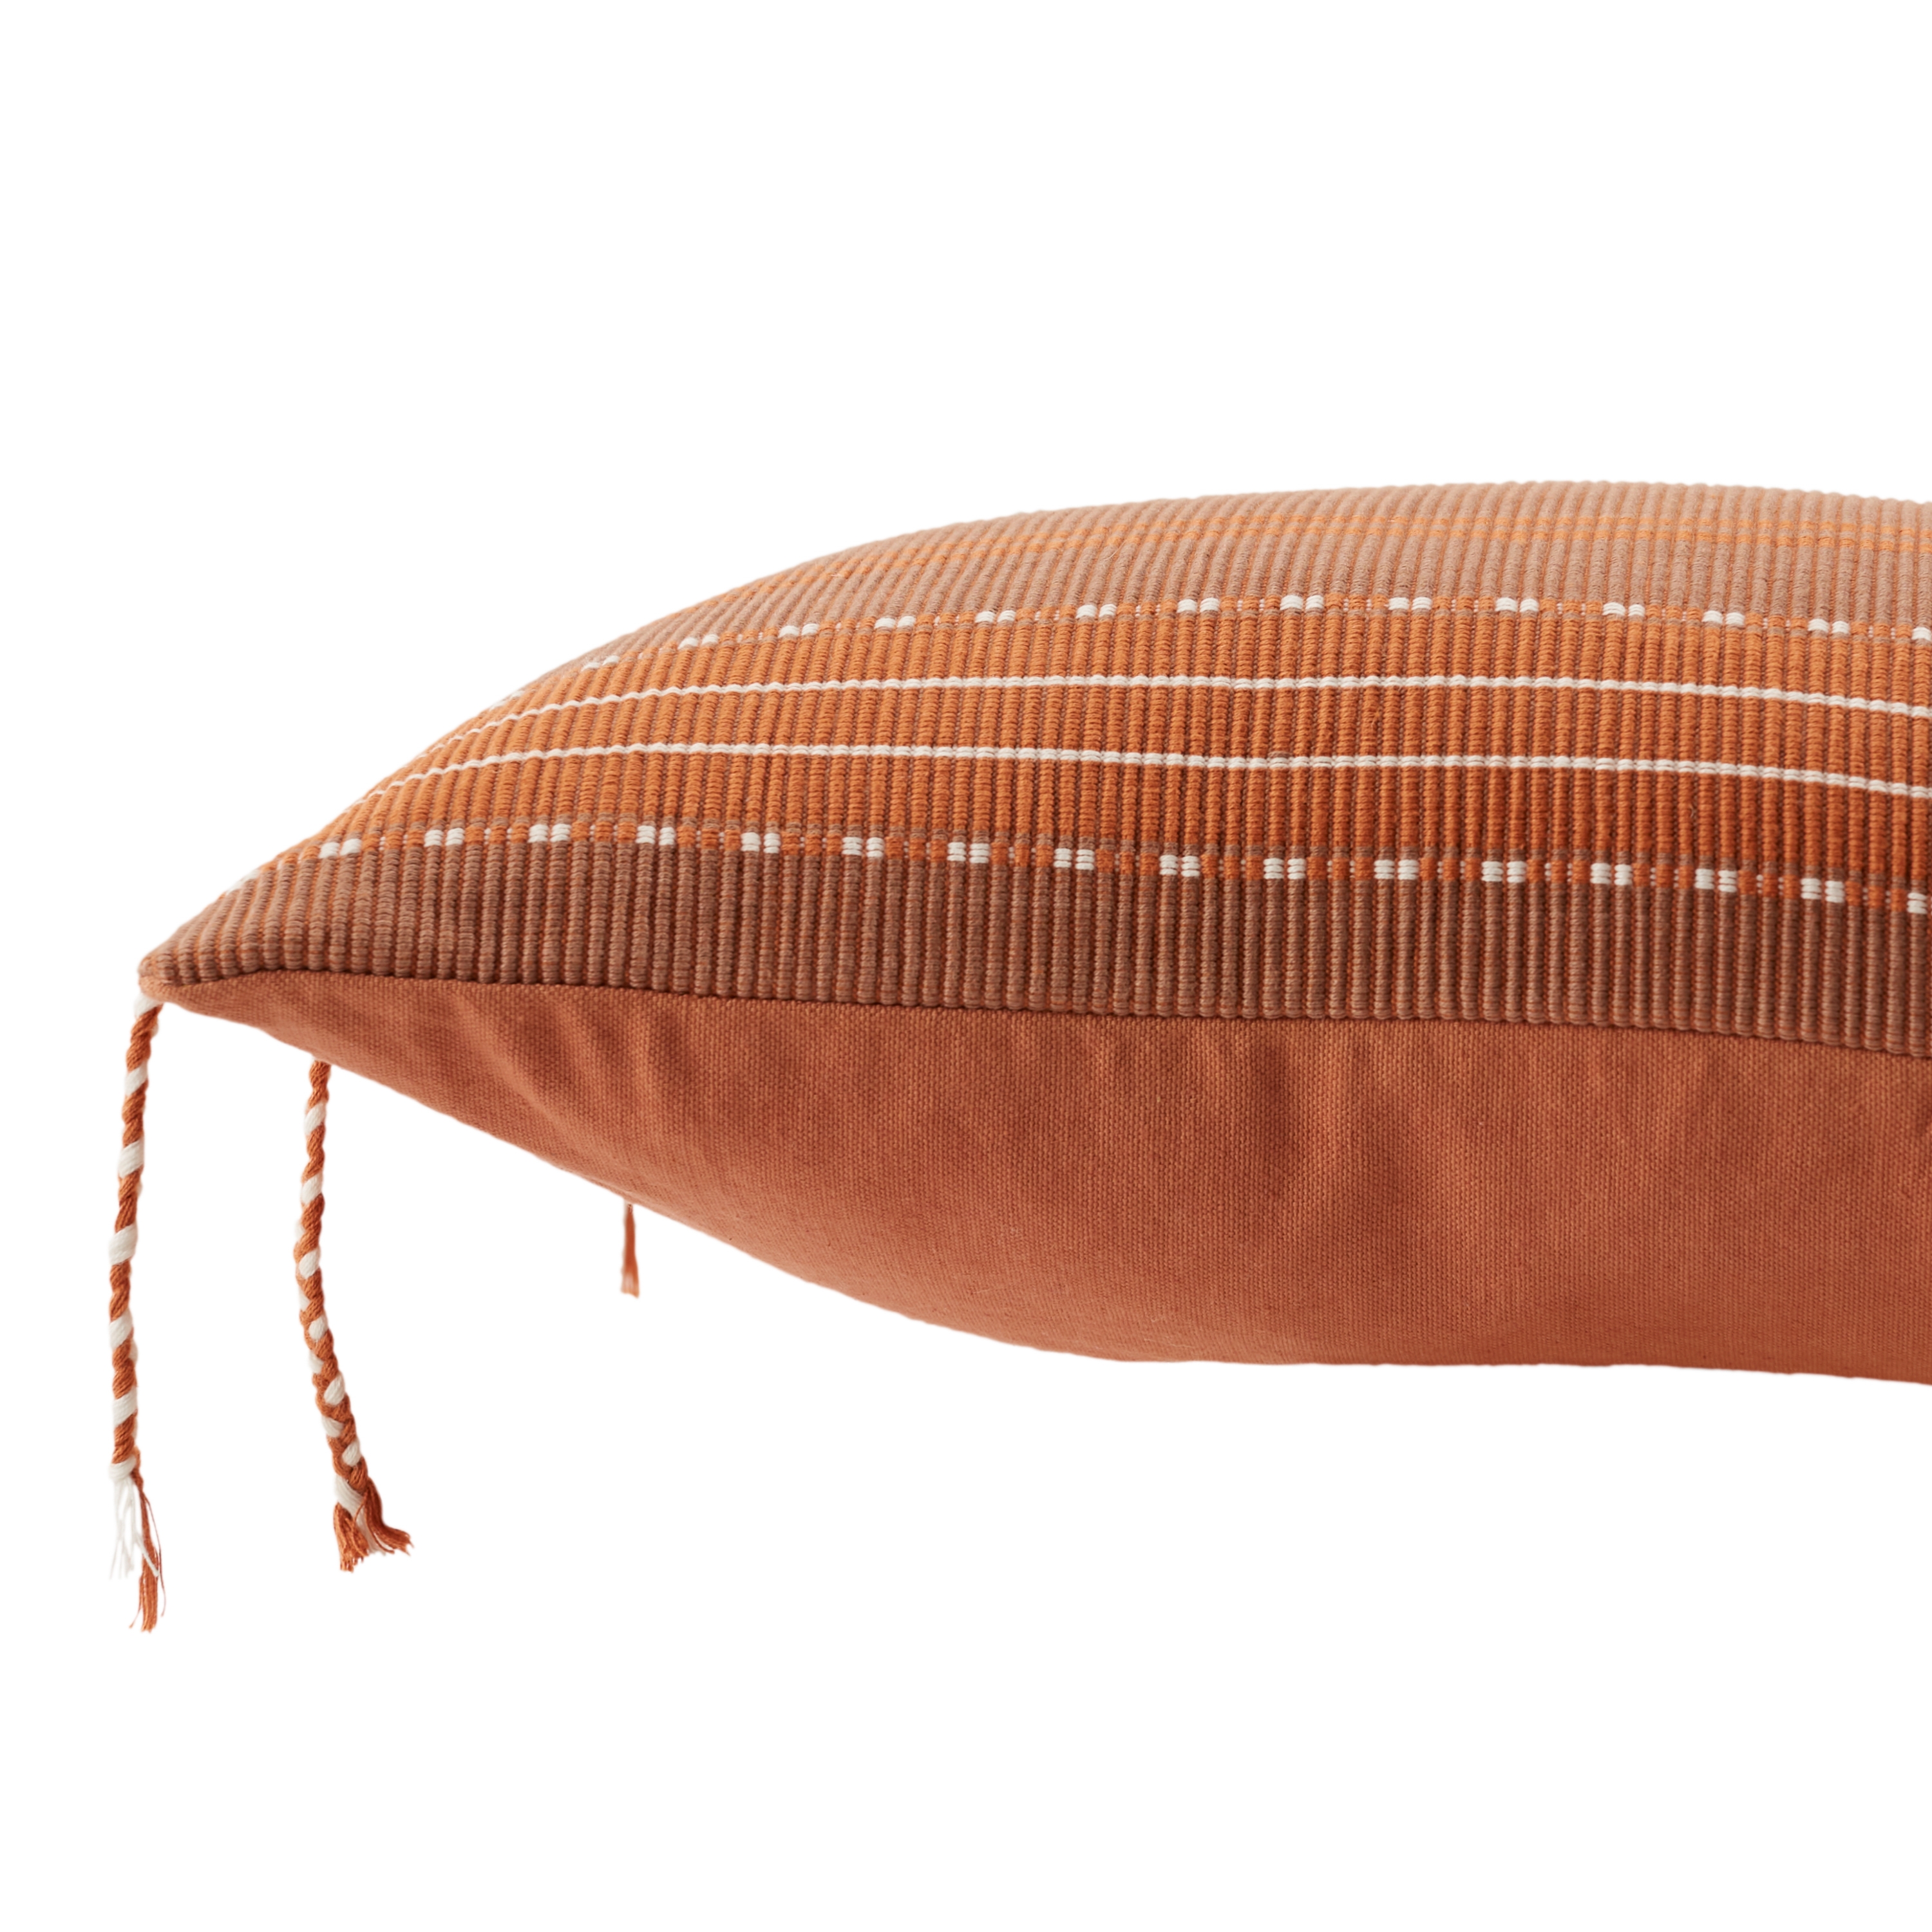 Bohdi Lumbar Pillow, Terracotta, 21" x 13" - Image 2